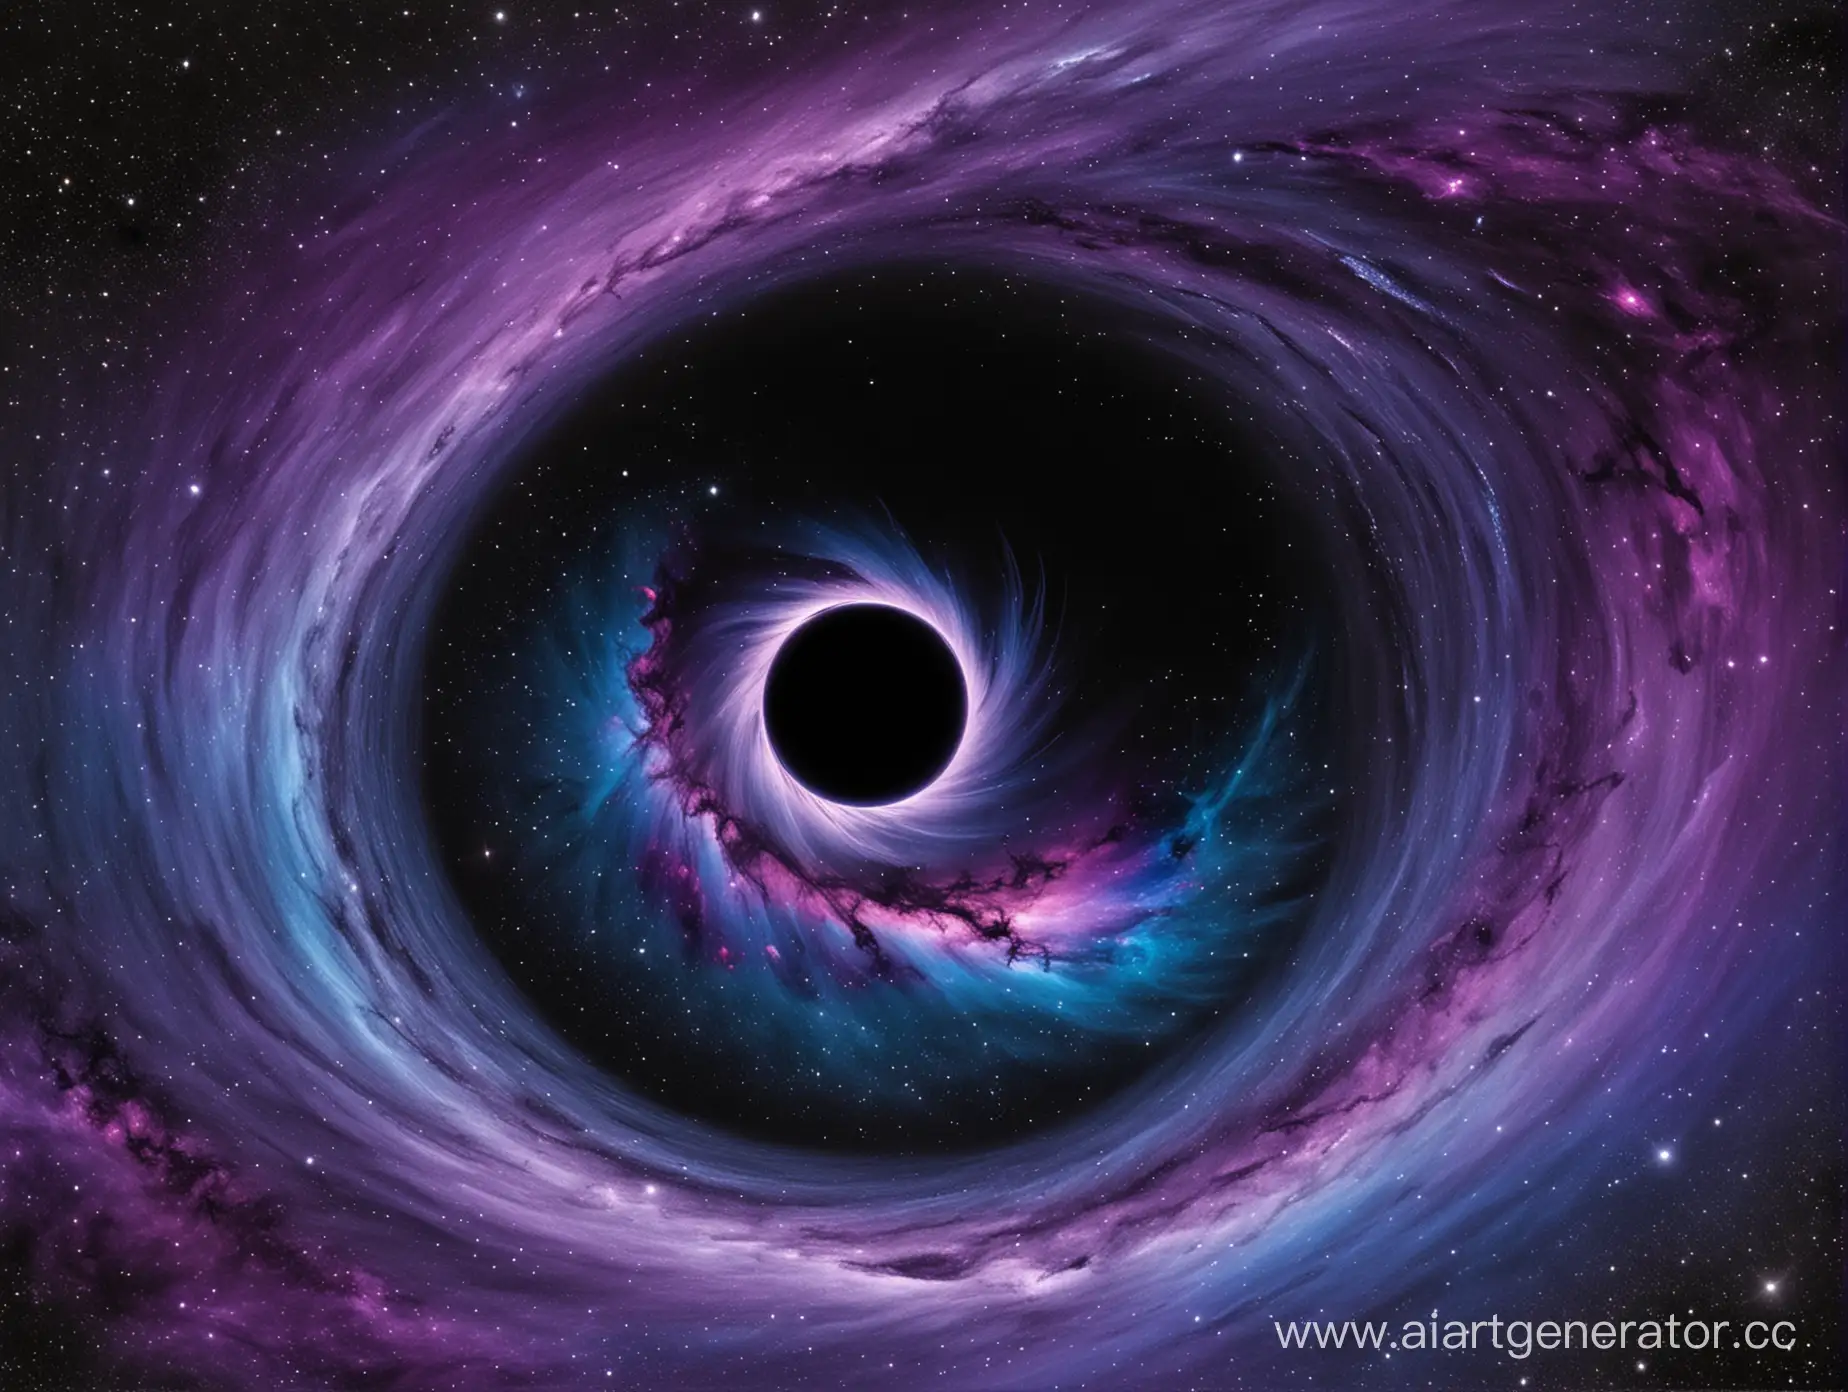 космос сине-пурпурных оттенков с чёрной дырой